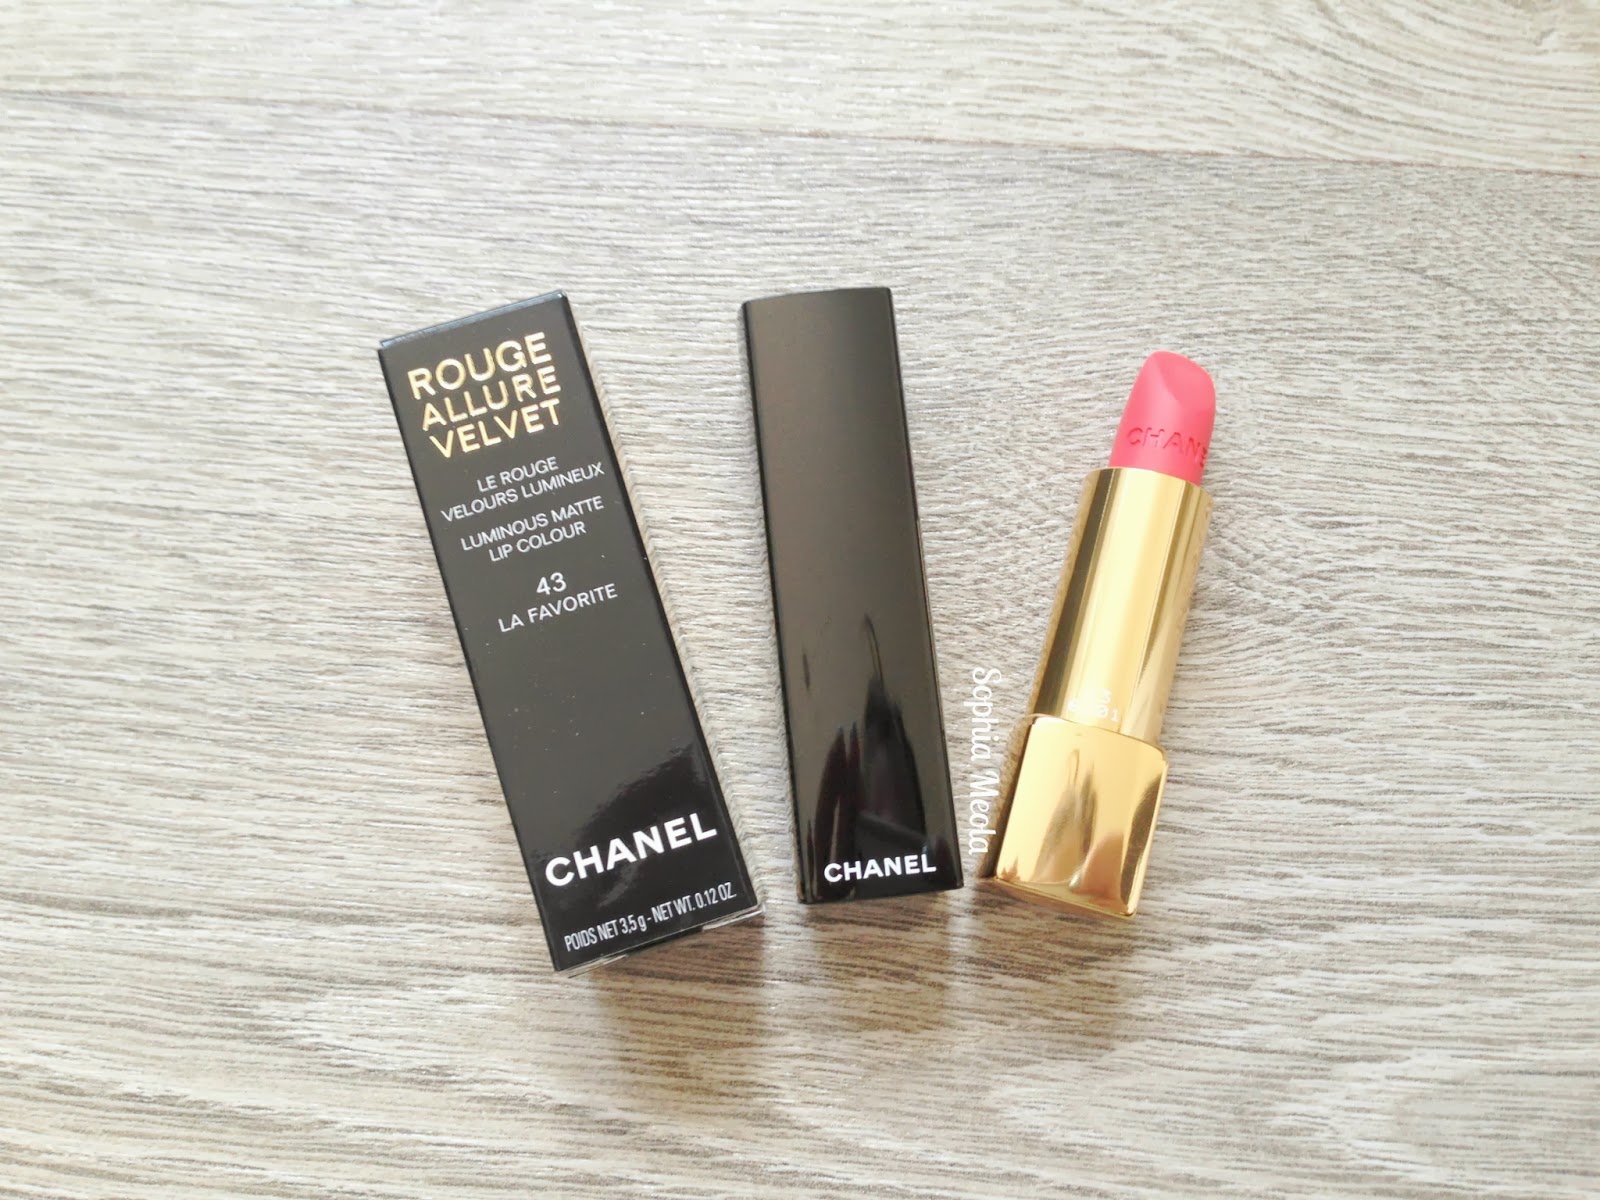 Chanel La Favorite Rouge Allure Velvet Lipstick, Sophia Meola